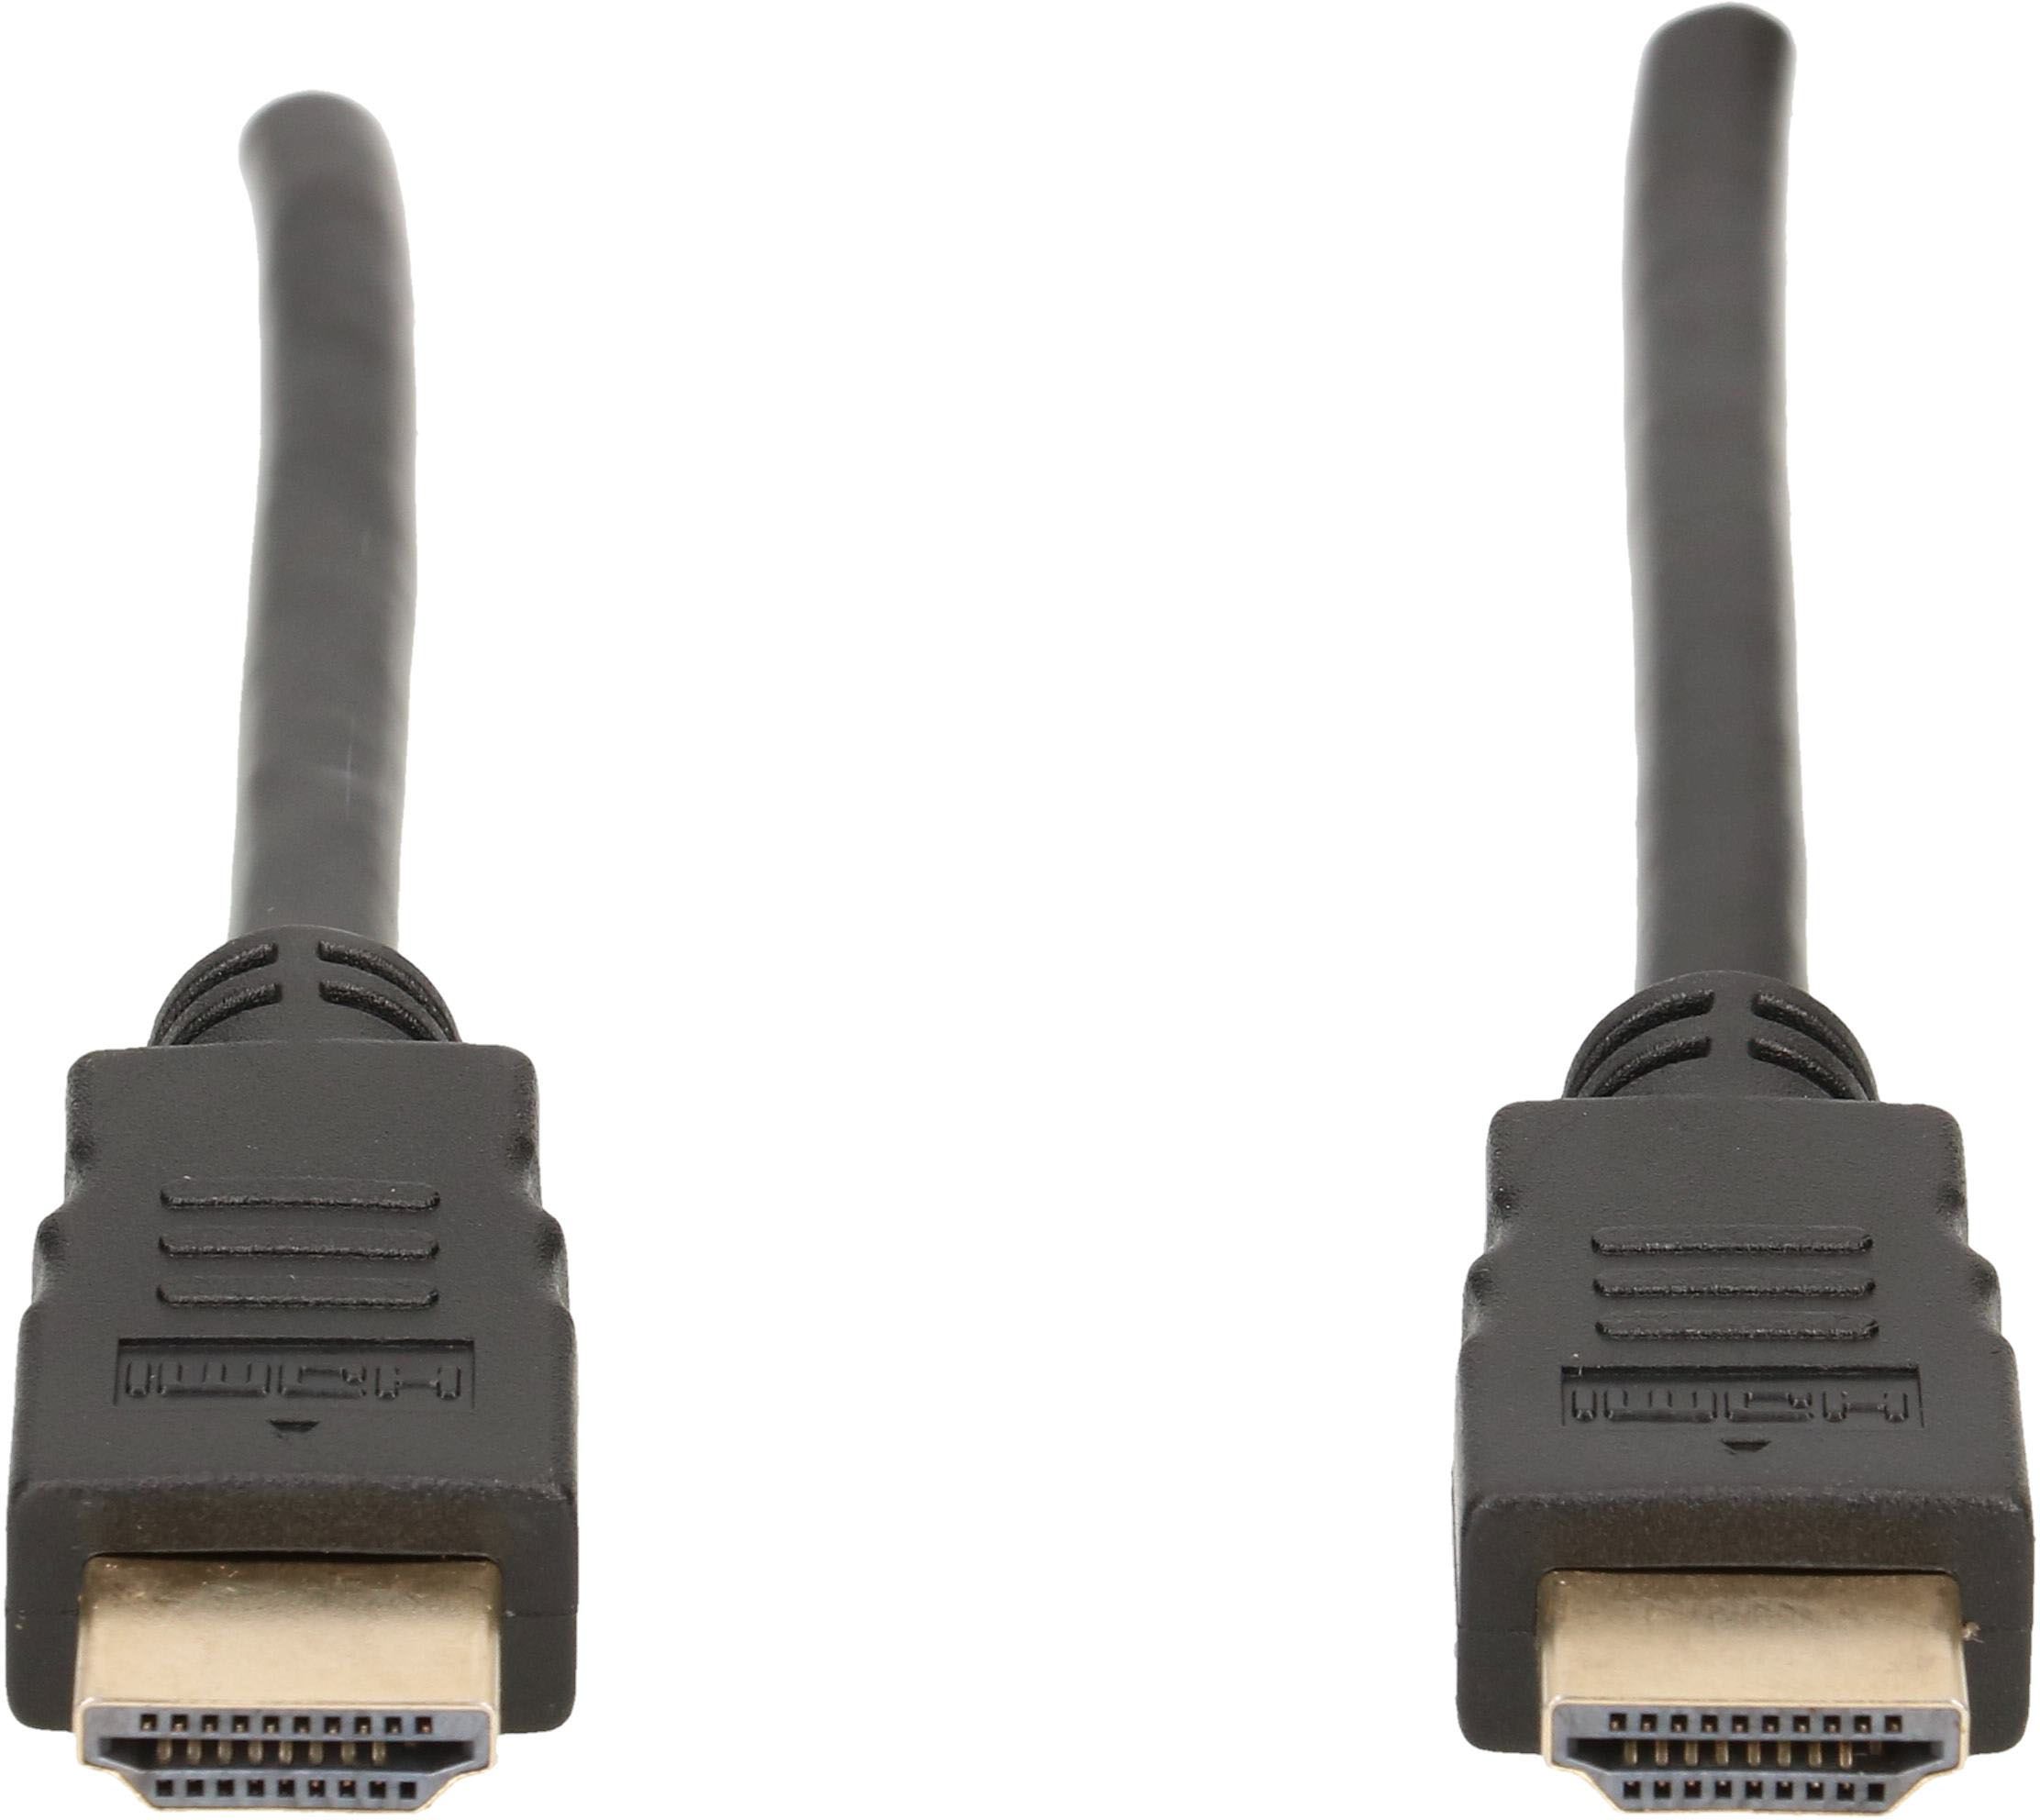 HDMI Kabel 5m schwarz High Speed